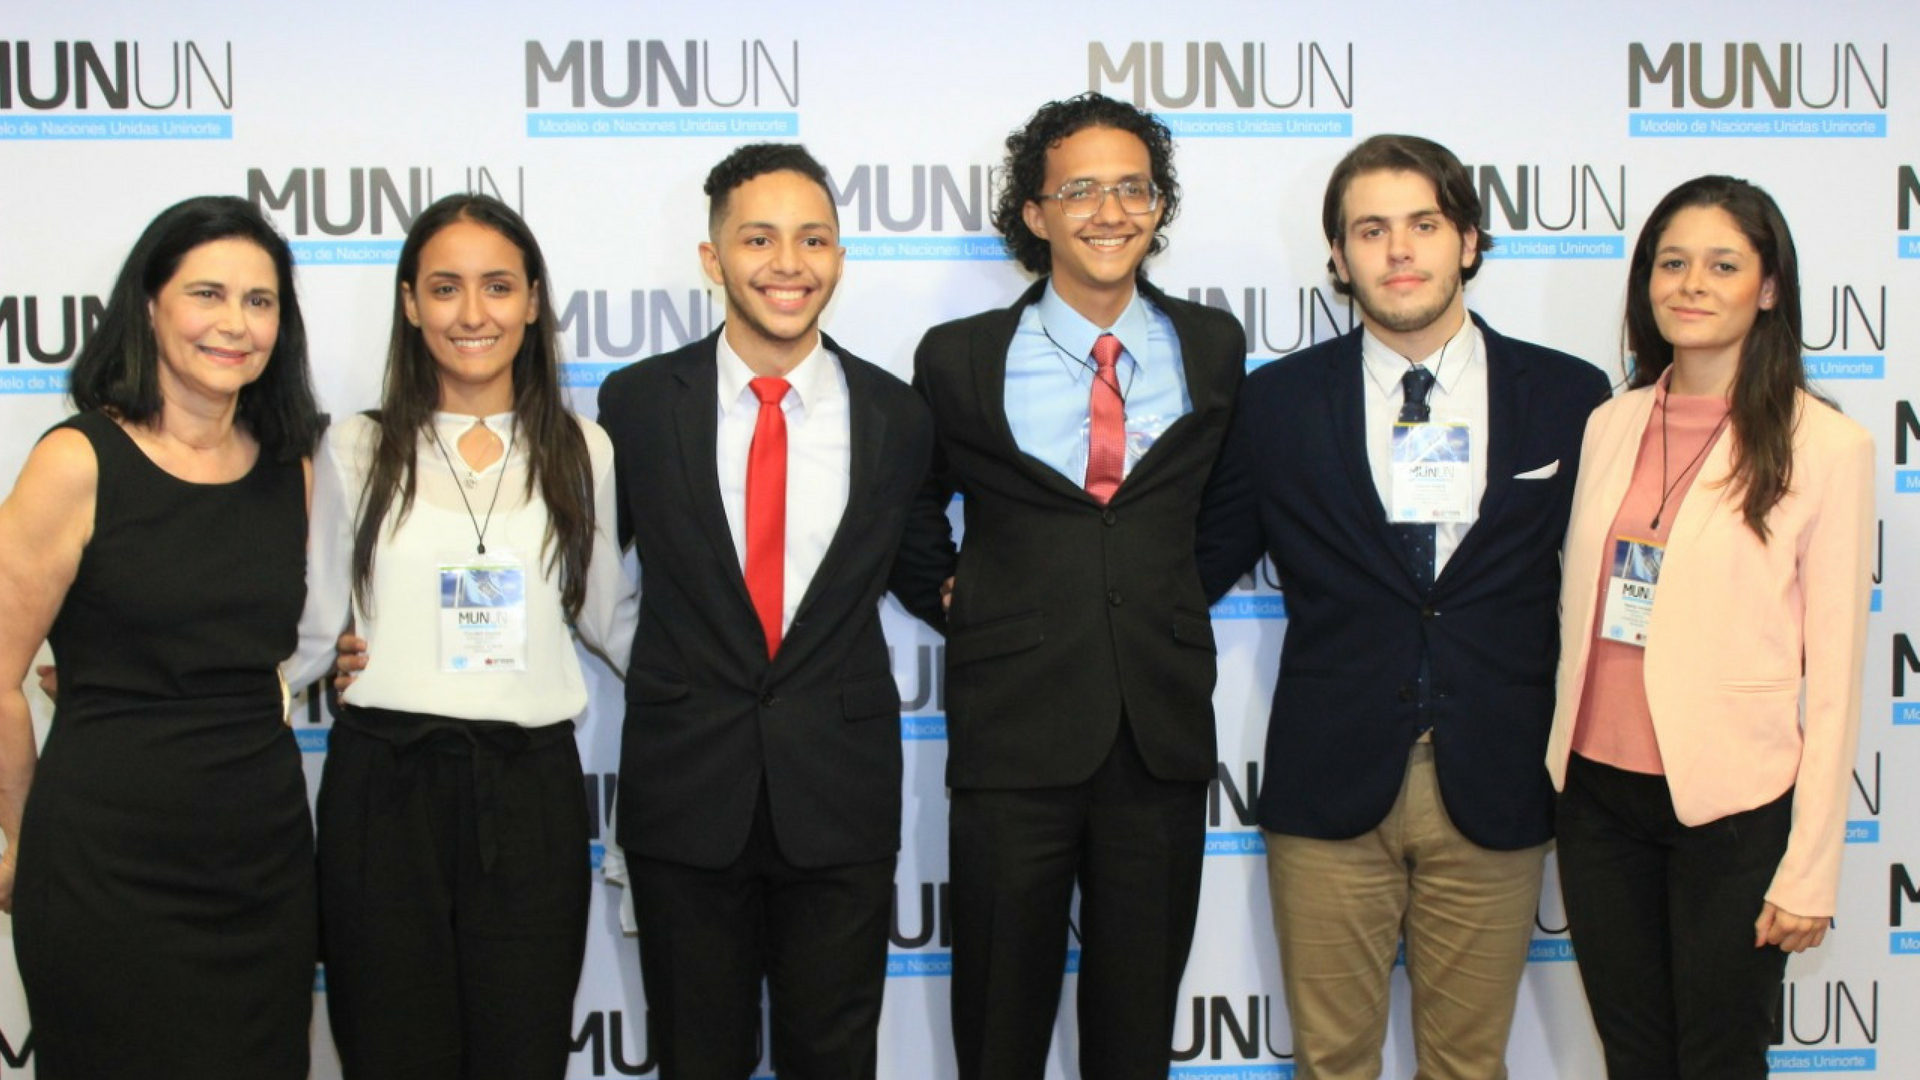 Versión 2018 - Modelo de Naciones Unidas Uninorte - Munun - Uninorte